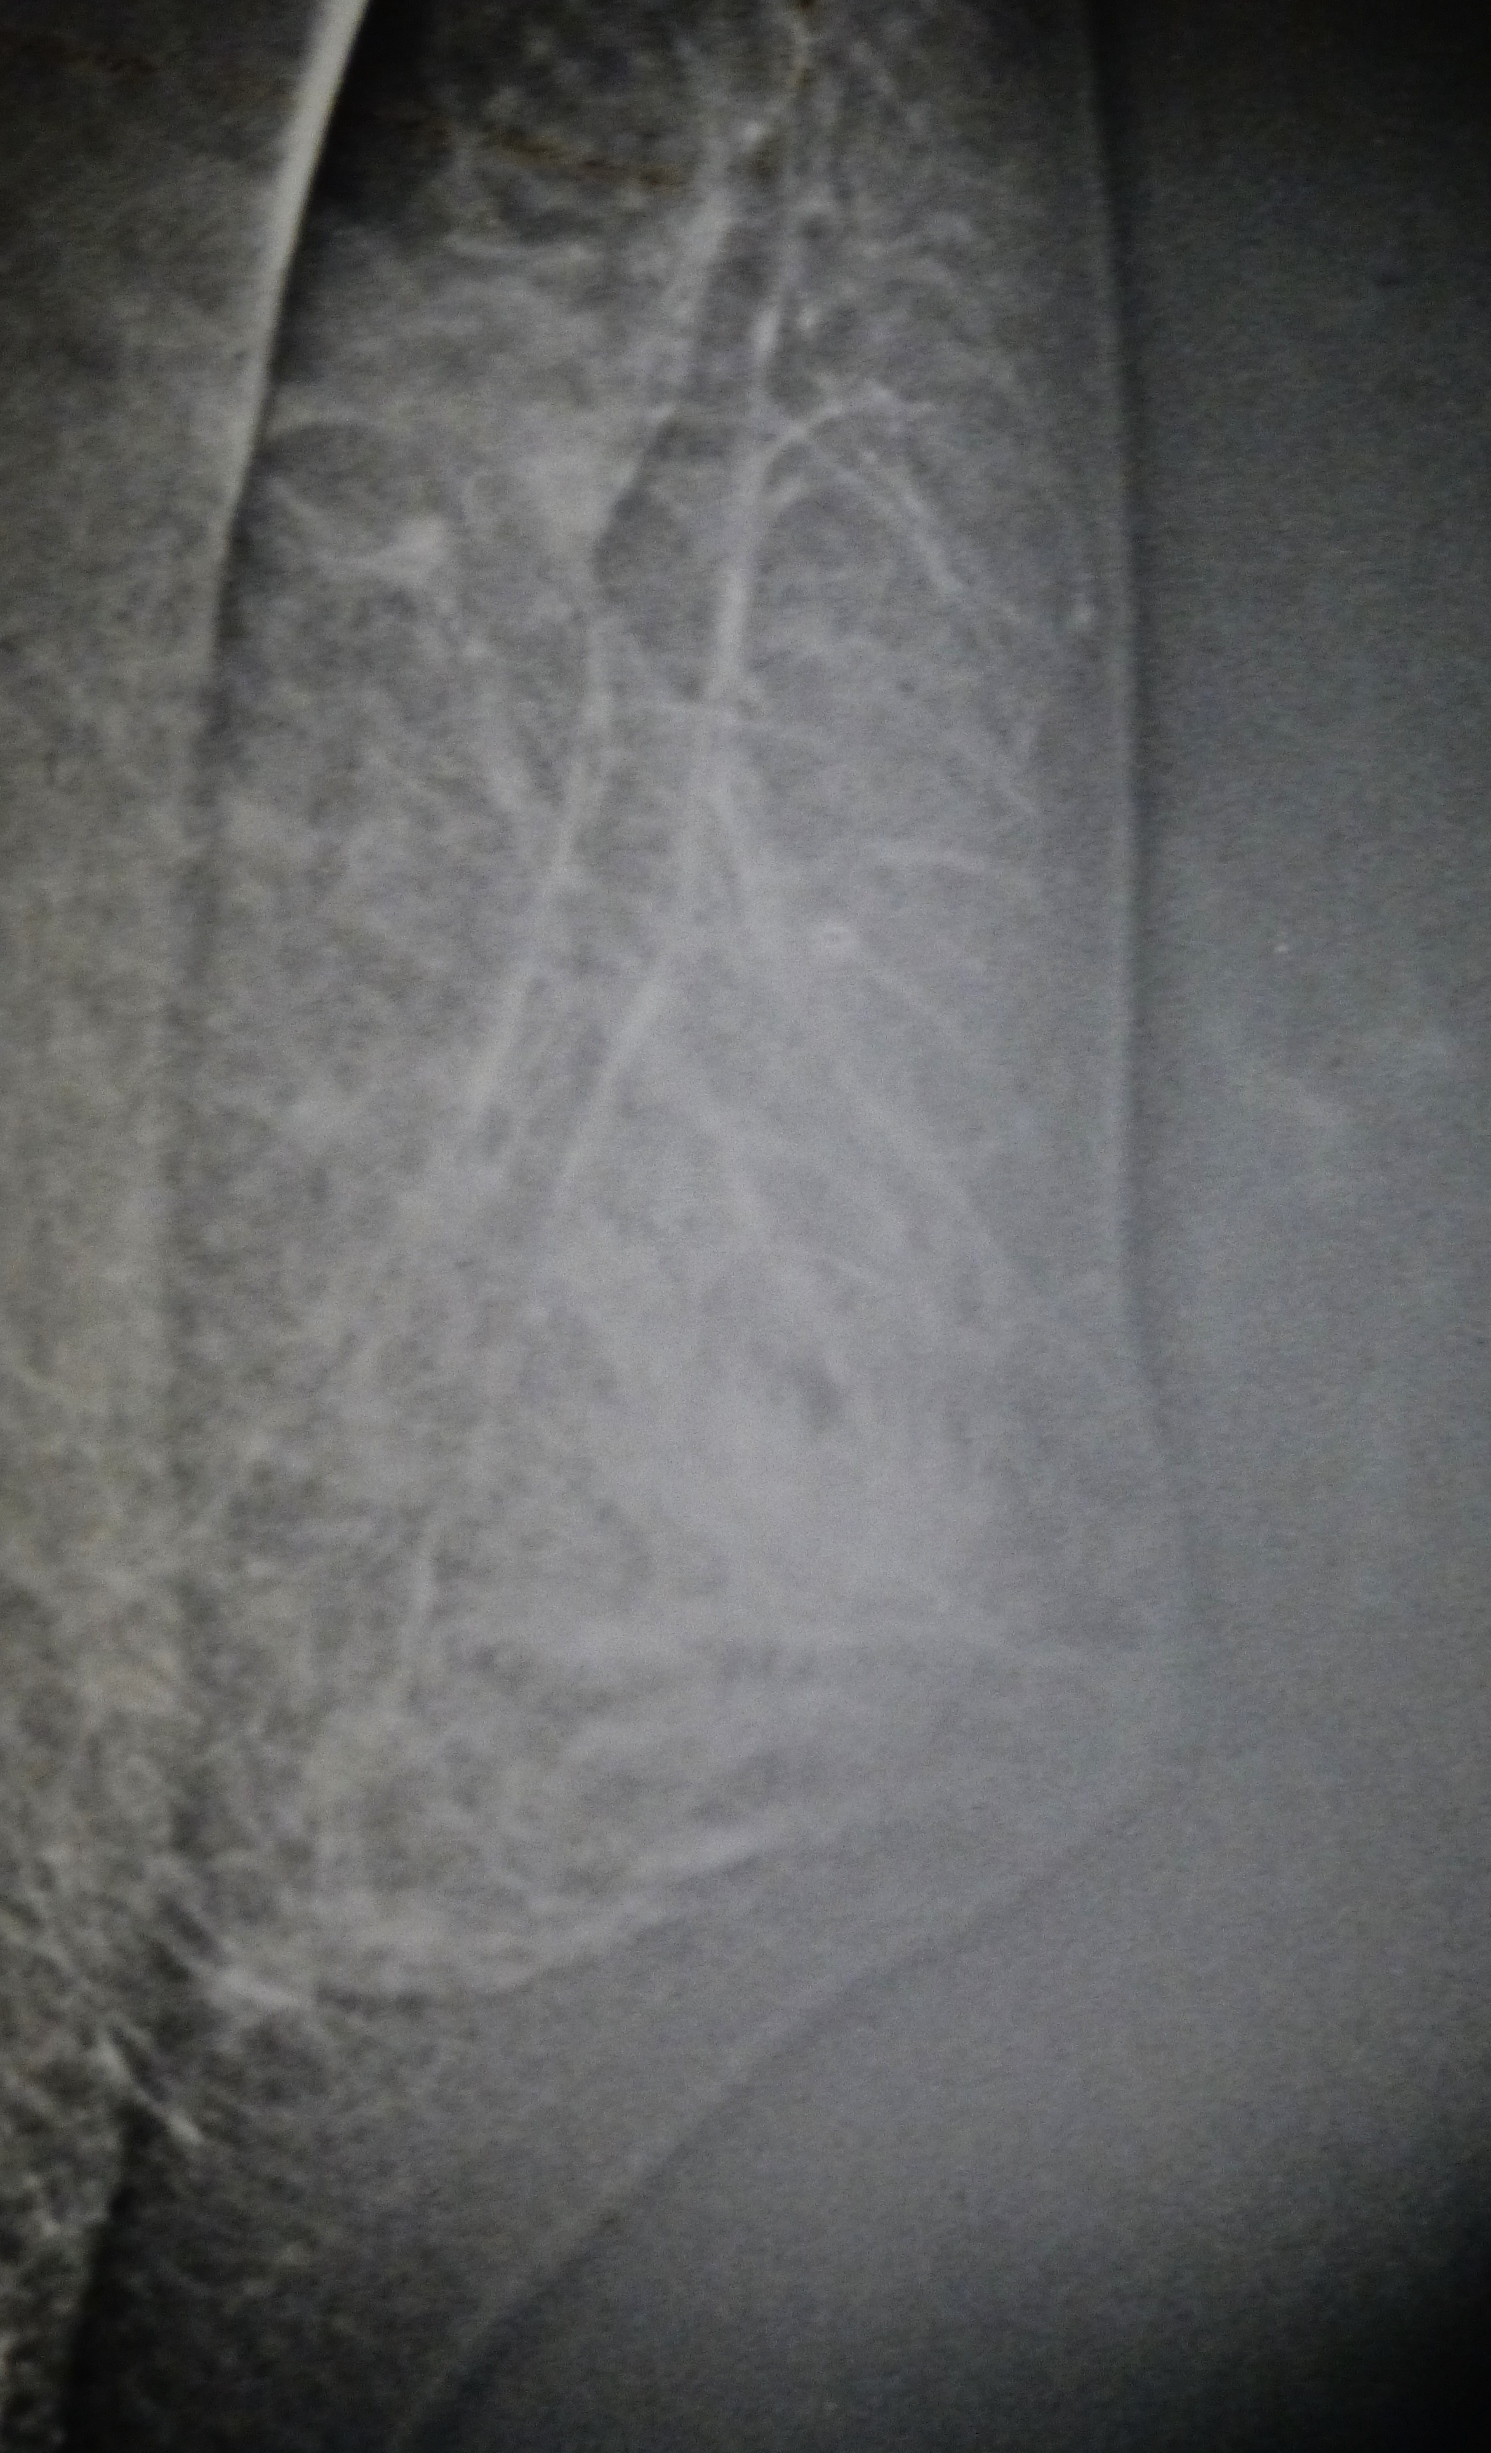 radiographie montrant les deux épaisseurs de glande mammaire à droite